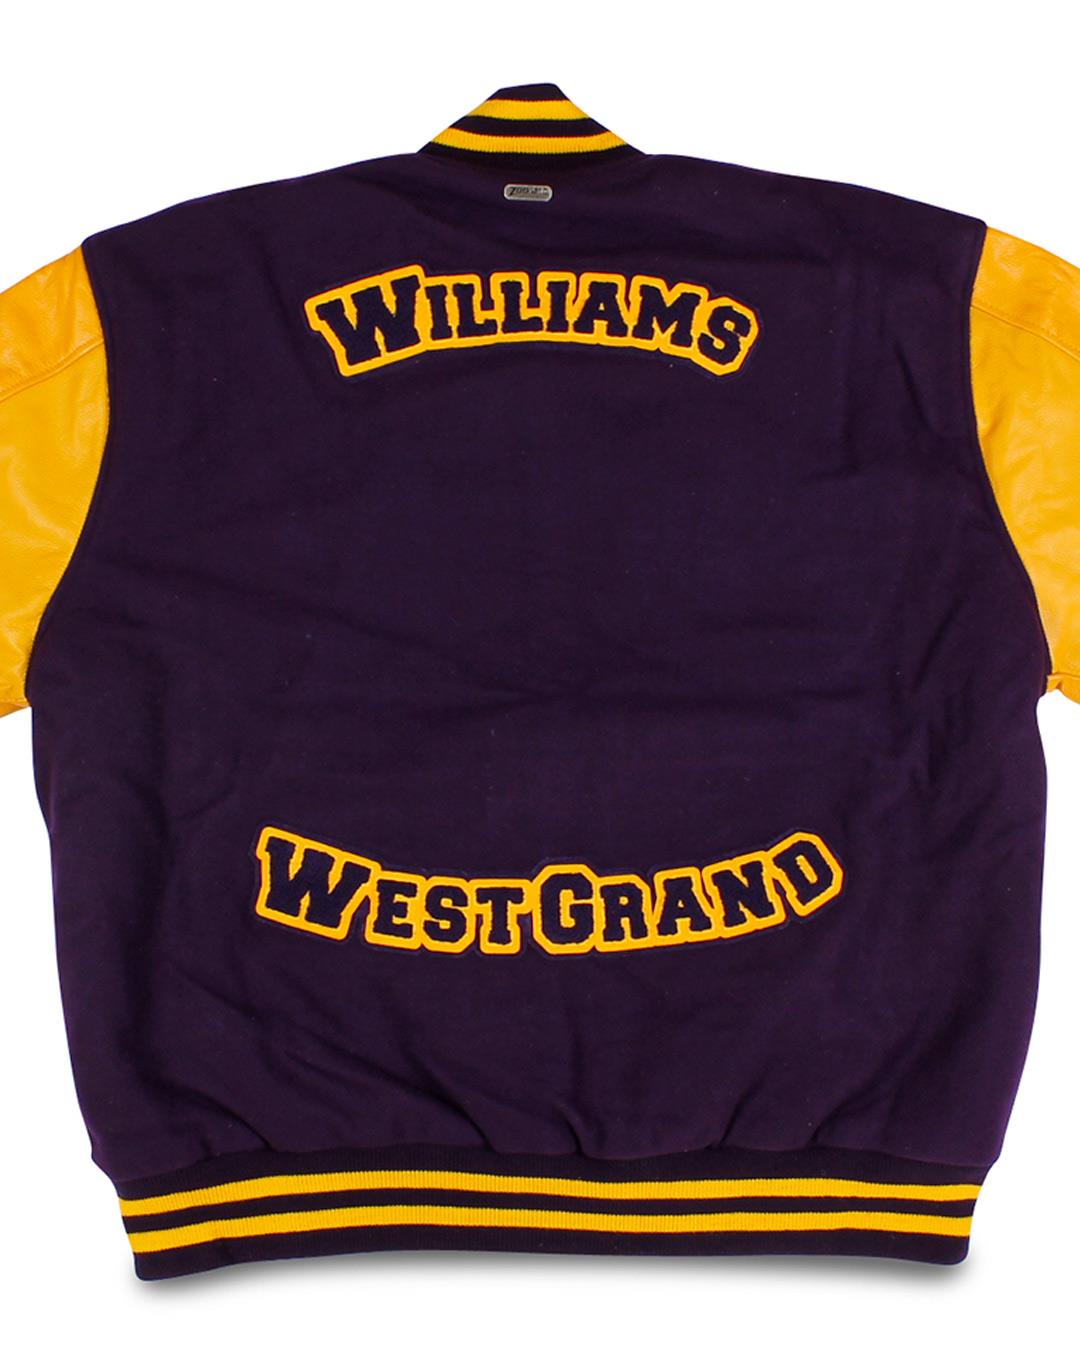 West Grand High School Letter Jacket, Kremling CO - Back